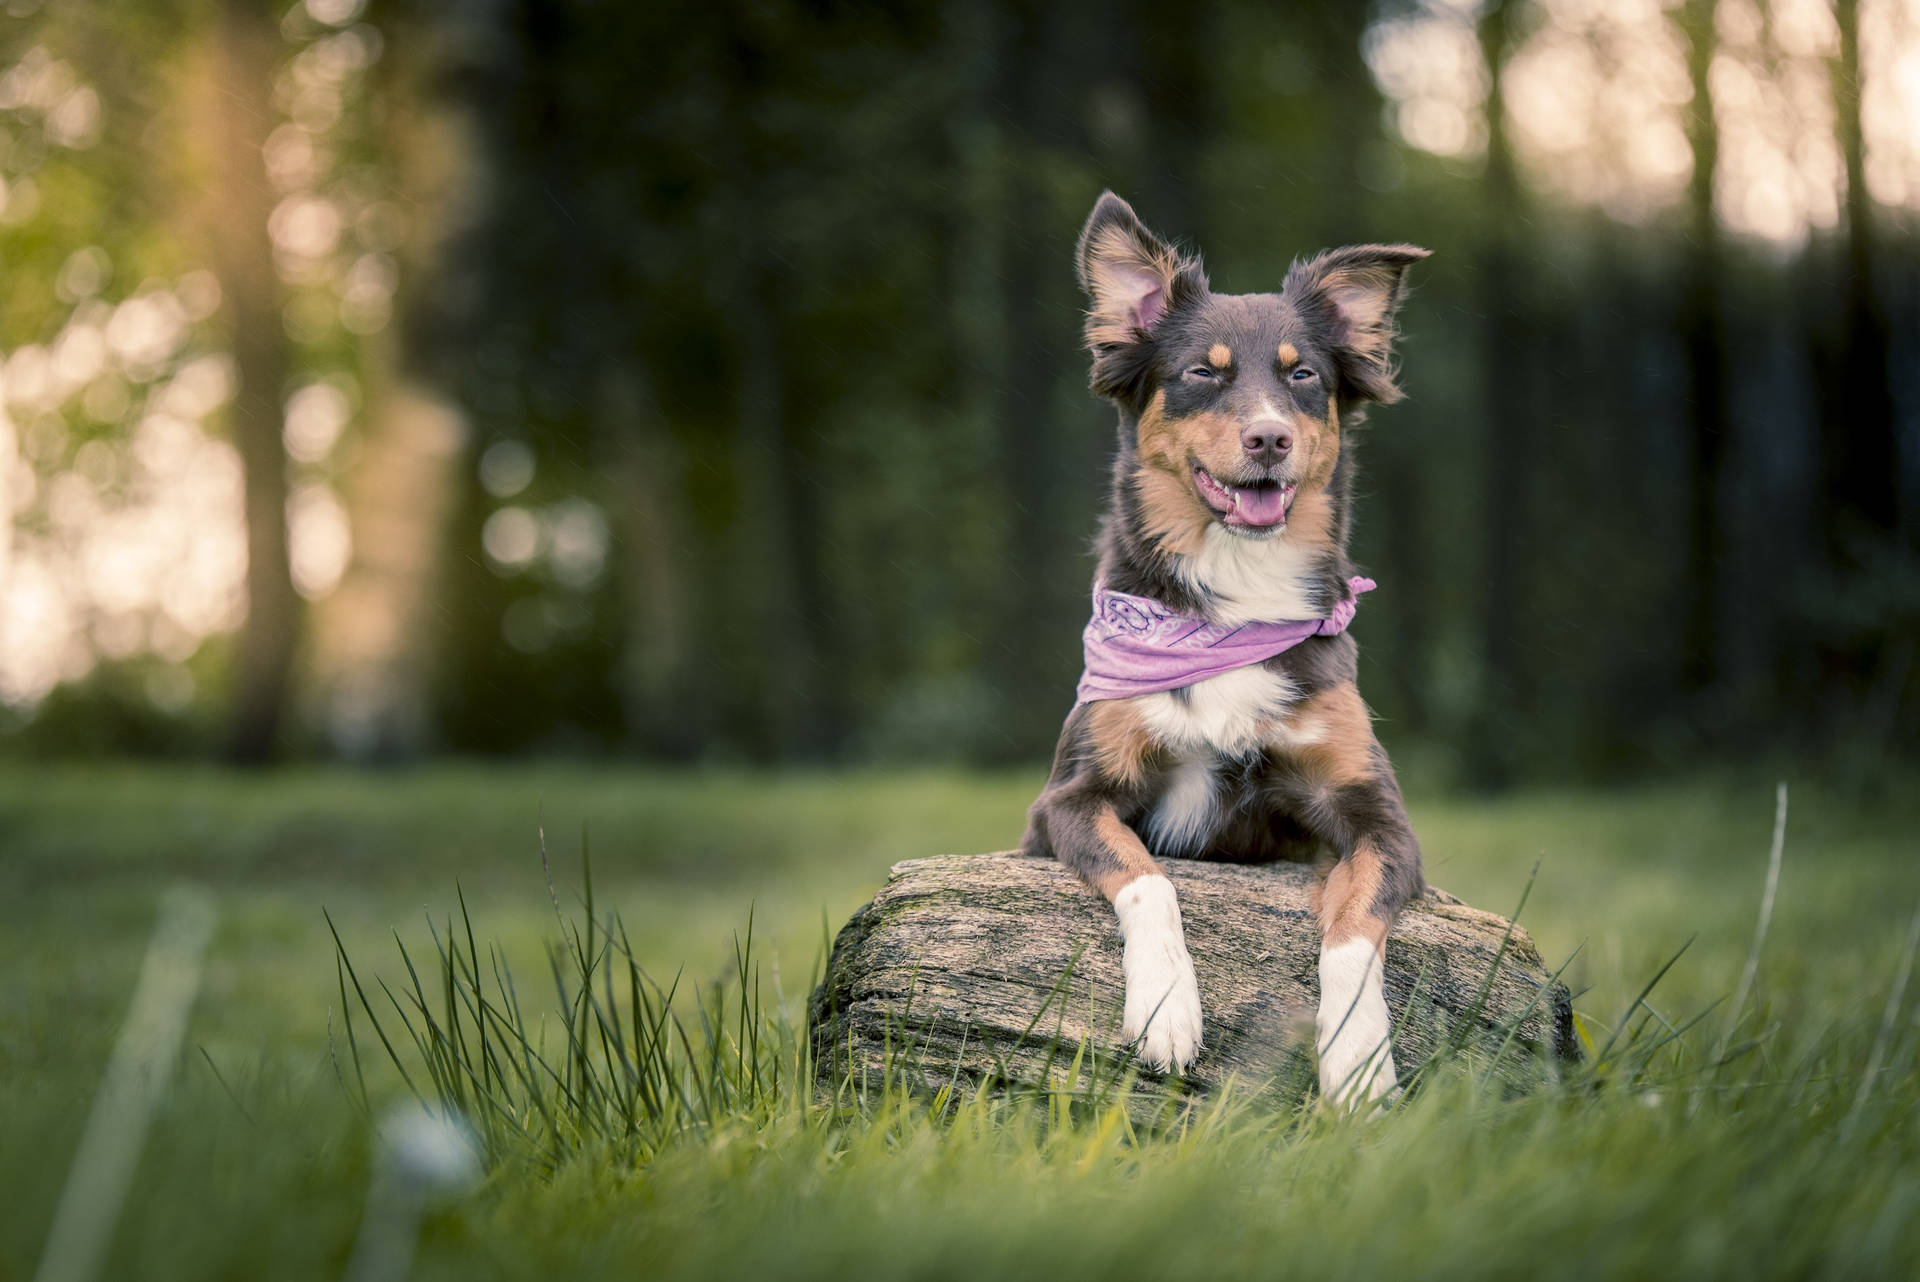 Cute Dog Wearing Purple Bandana Background